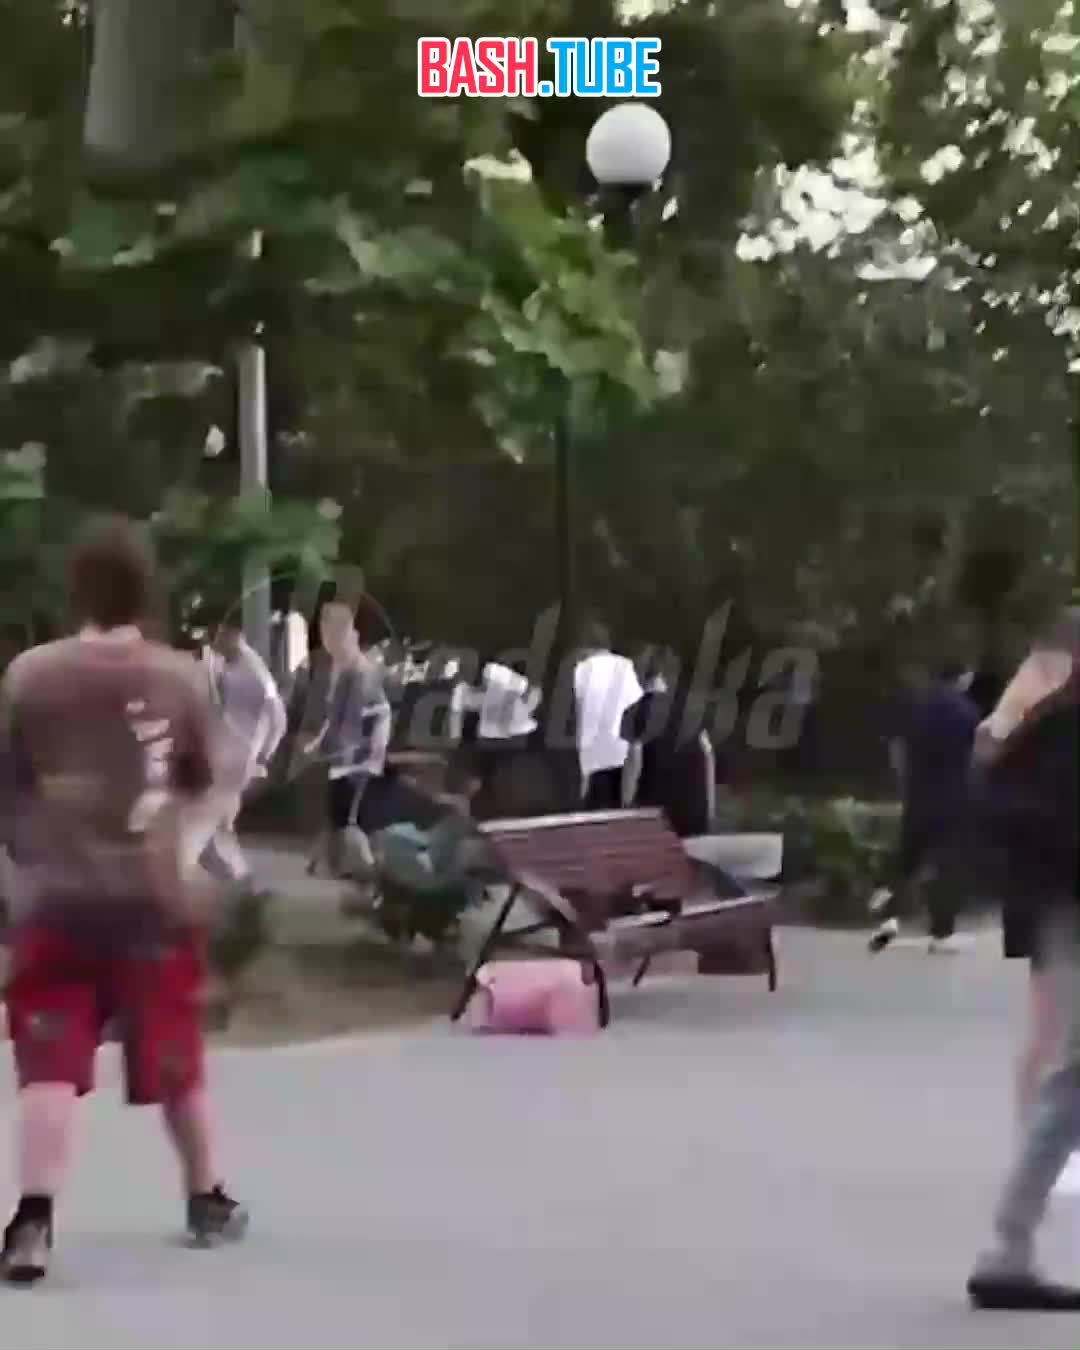 ⁣ В Севастополе толпа нерусских схлестнулась в детском парке и забила ногами 17-летнего спортсмена, проходившего мимо